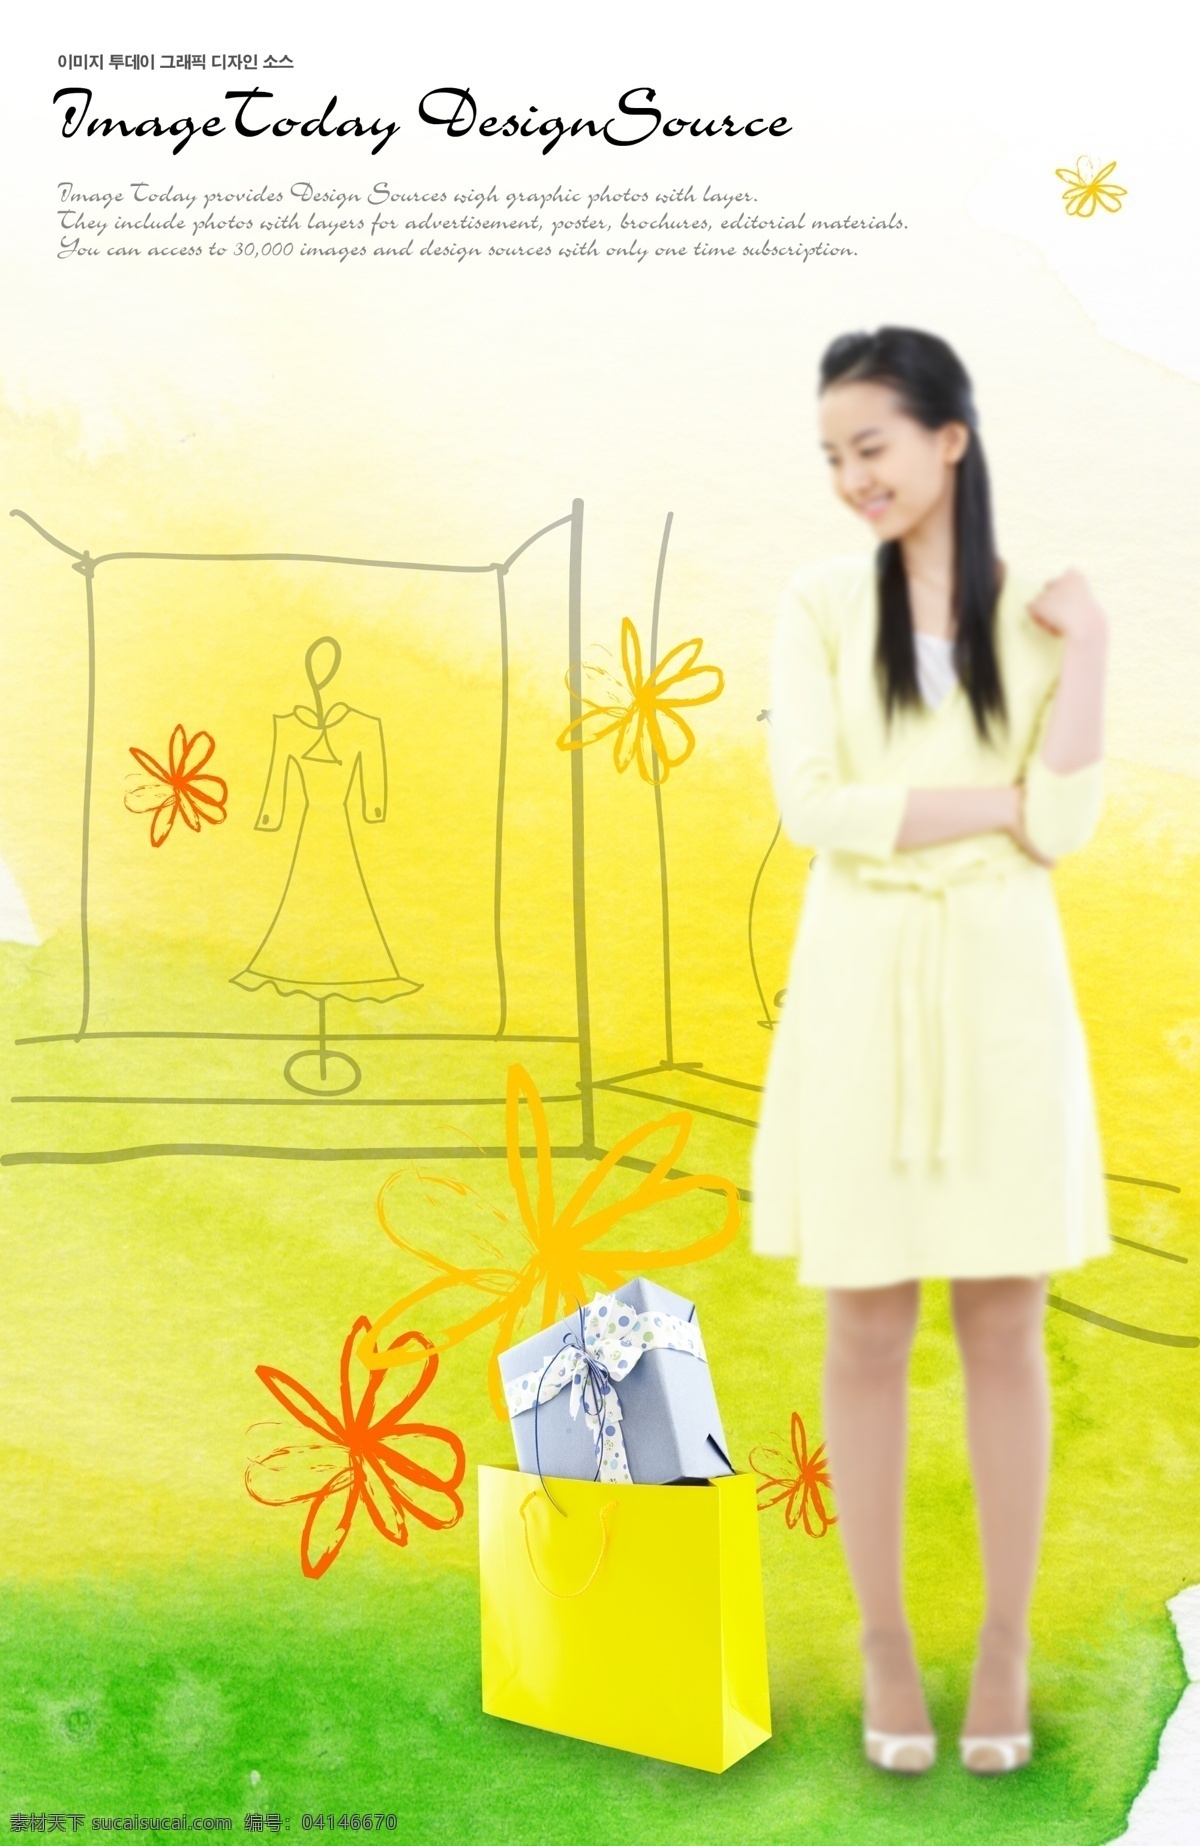 穿 浅黄色 长裙 美女 分层 韩国素材 krtk 创意设计 人物 手绘 花朵 微笑 笑容 开心 裙装 裙子 礼物盒 礼品 手提袋 购物袋 黄色